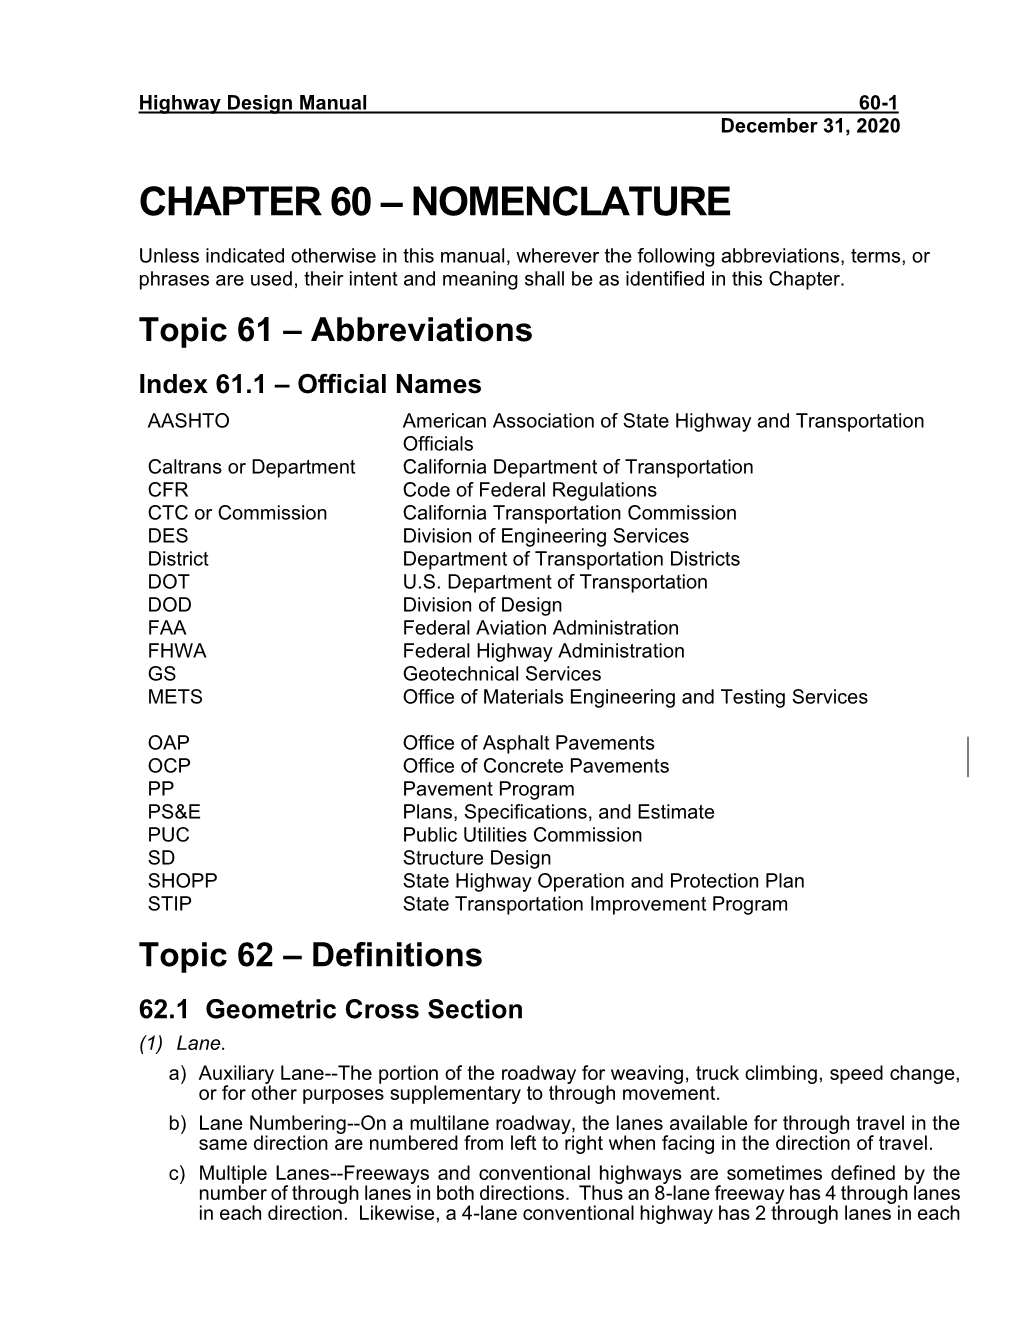 Chapter 60: Nomenclature (PDF)